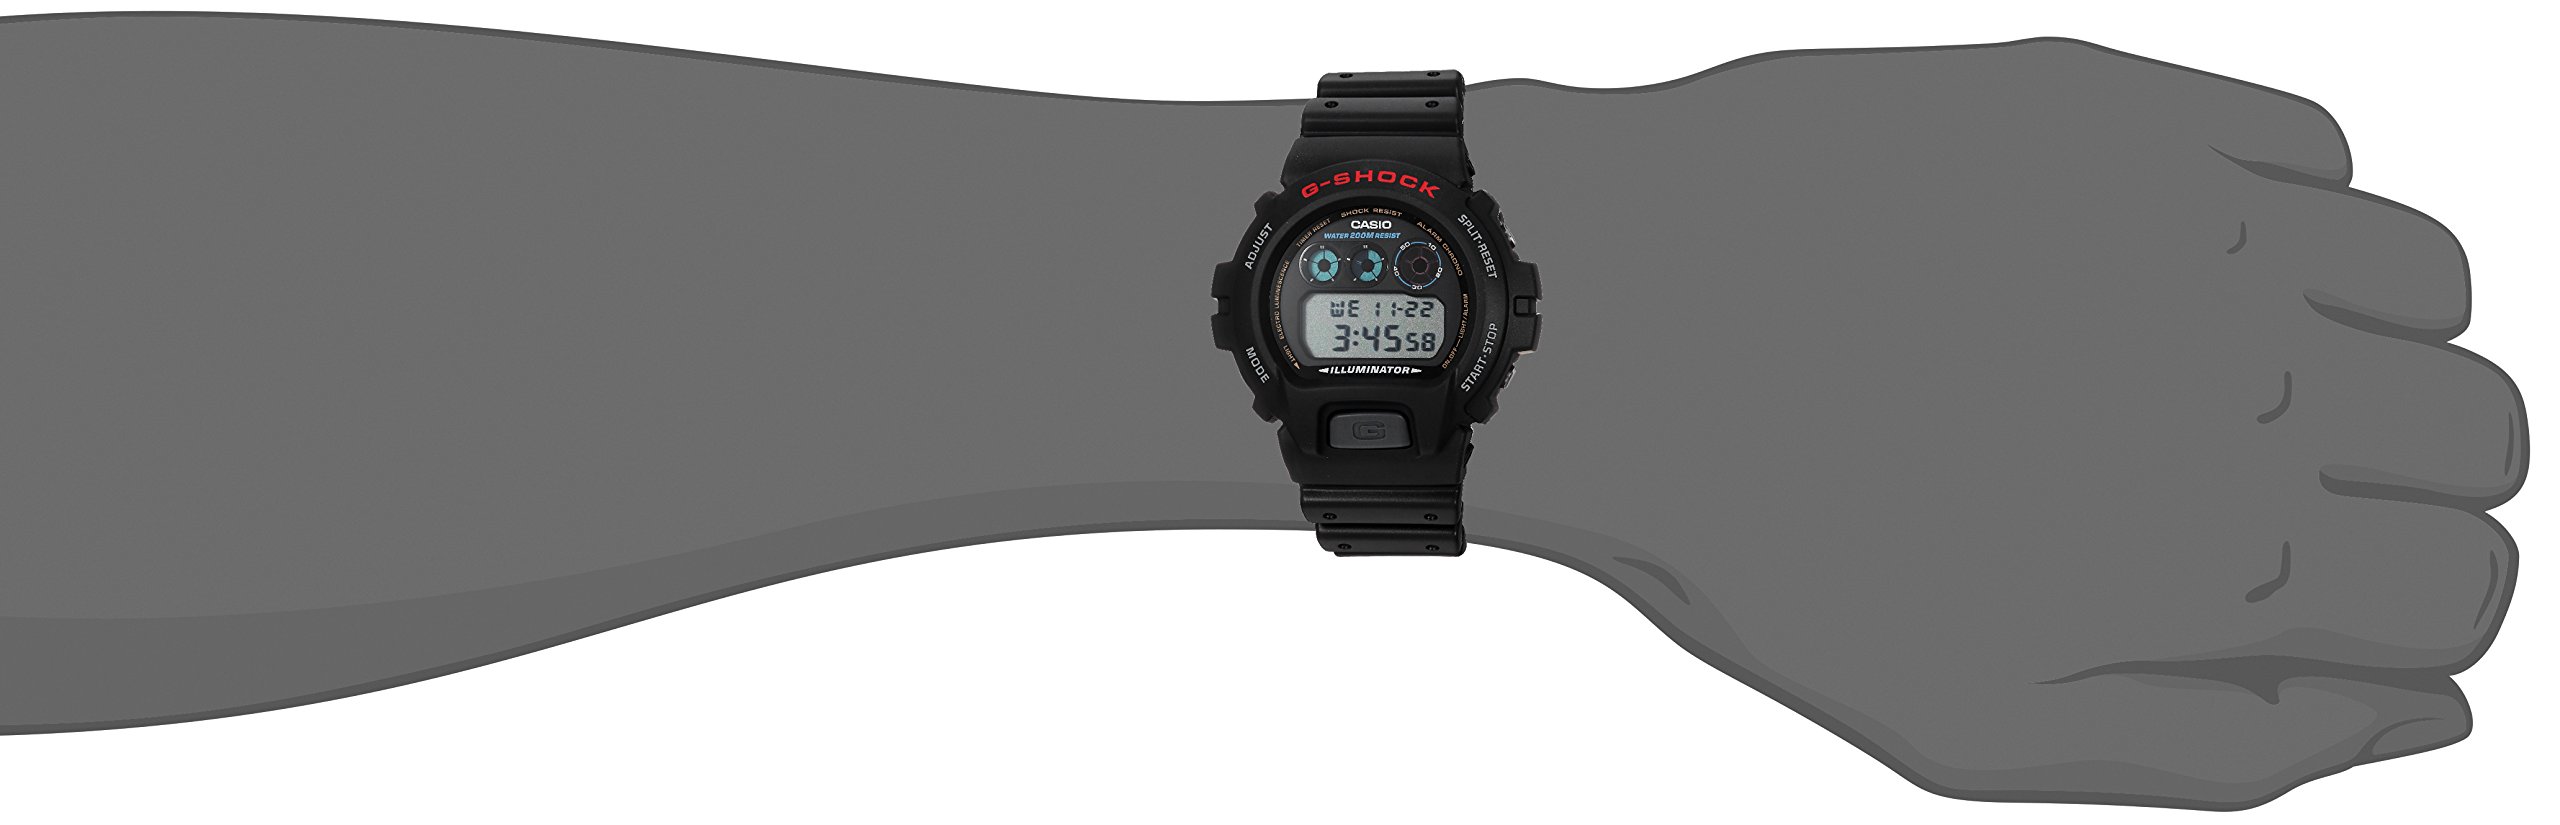 Casio Men's G-Shock DW6900-1V Sport Watch